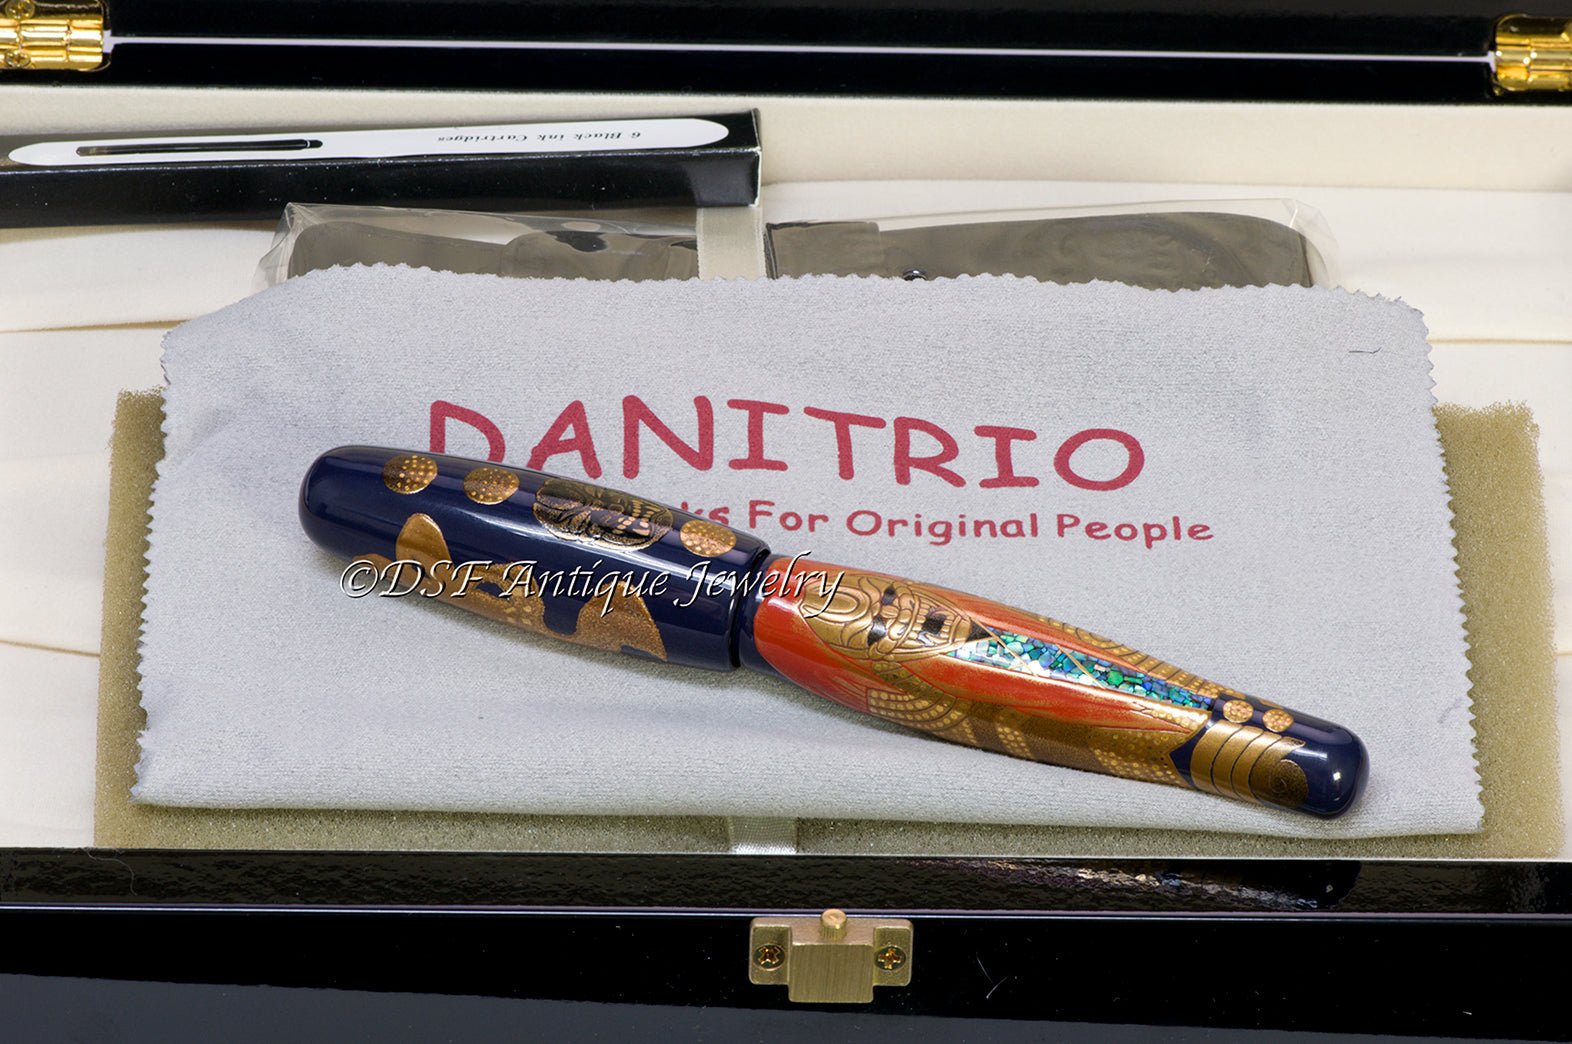 Danitrio Grand Trio Shakkyo Limited Edition Maki-e Hyotan Fountain Pen